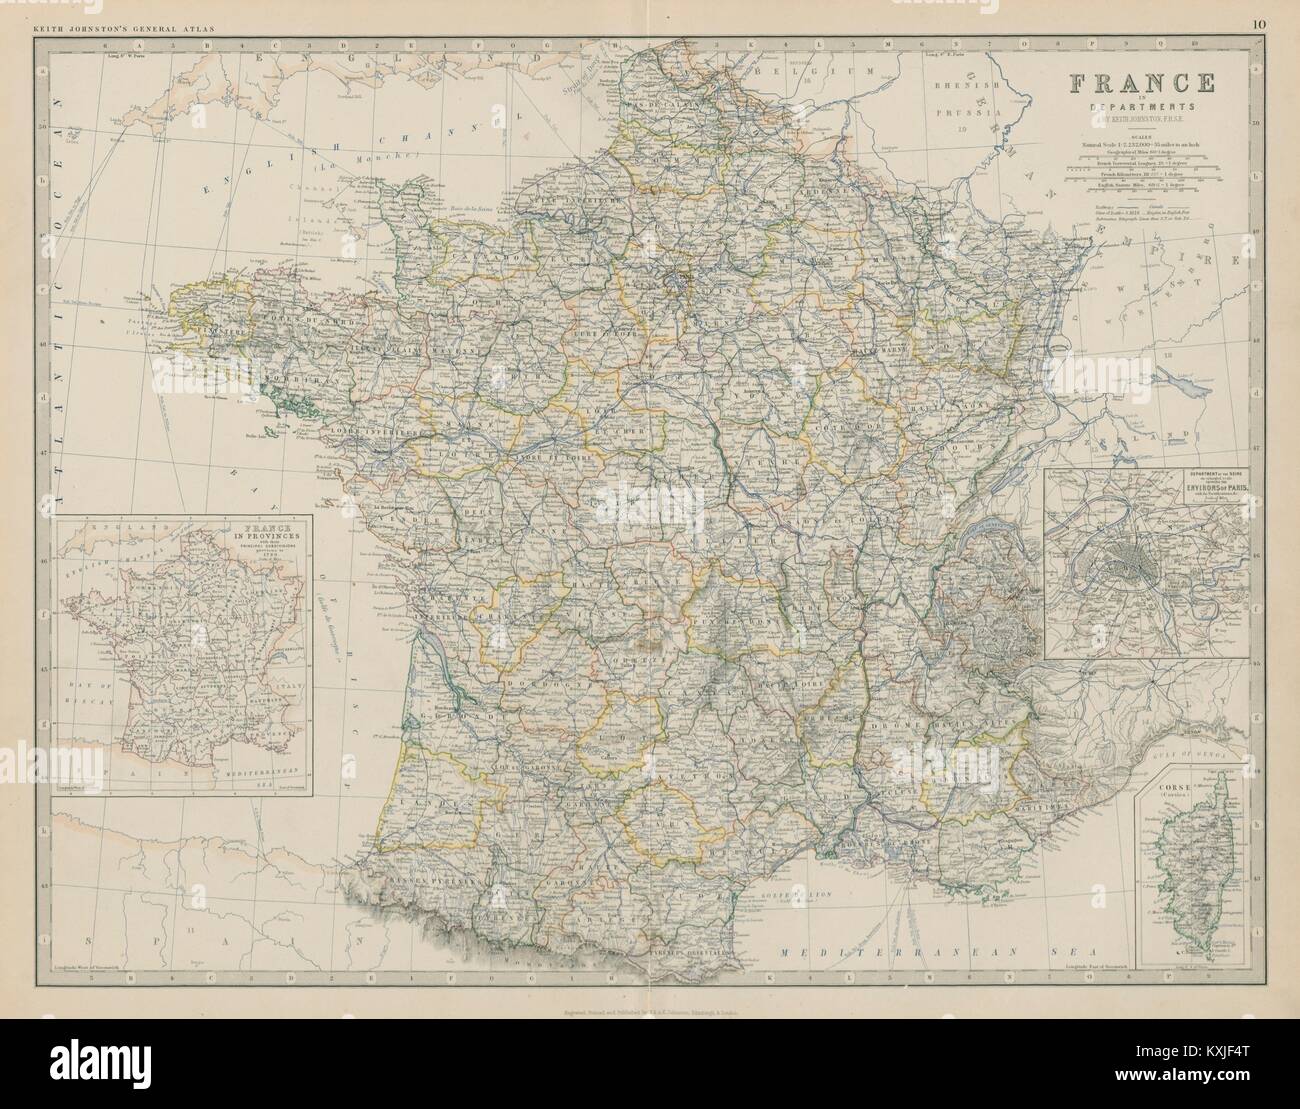 La France en départements. Departements. Grande 50x60cm. JOHNSTON 1879 Ancien site Banque D'Images